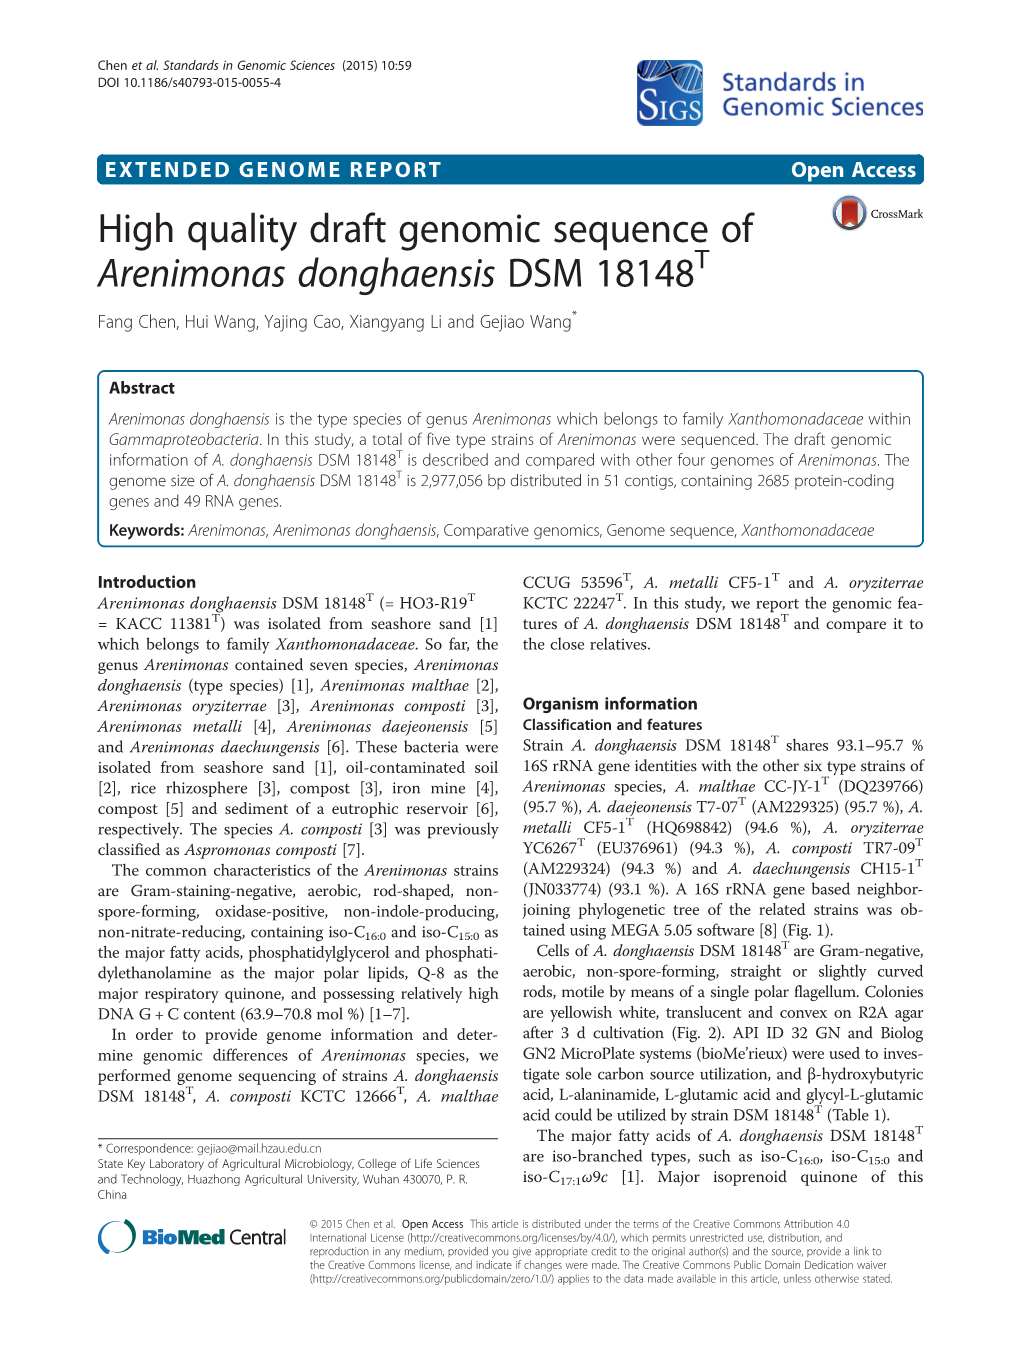 High Quality Draft Genomic Sequence of Arenimonas Donghaensis DSM 18148T Fang Chen, Hui Wang, Yajing Cao, Xiangyang Li and Gejiao Wang*